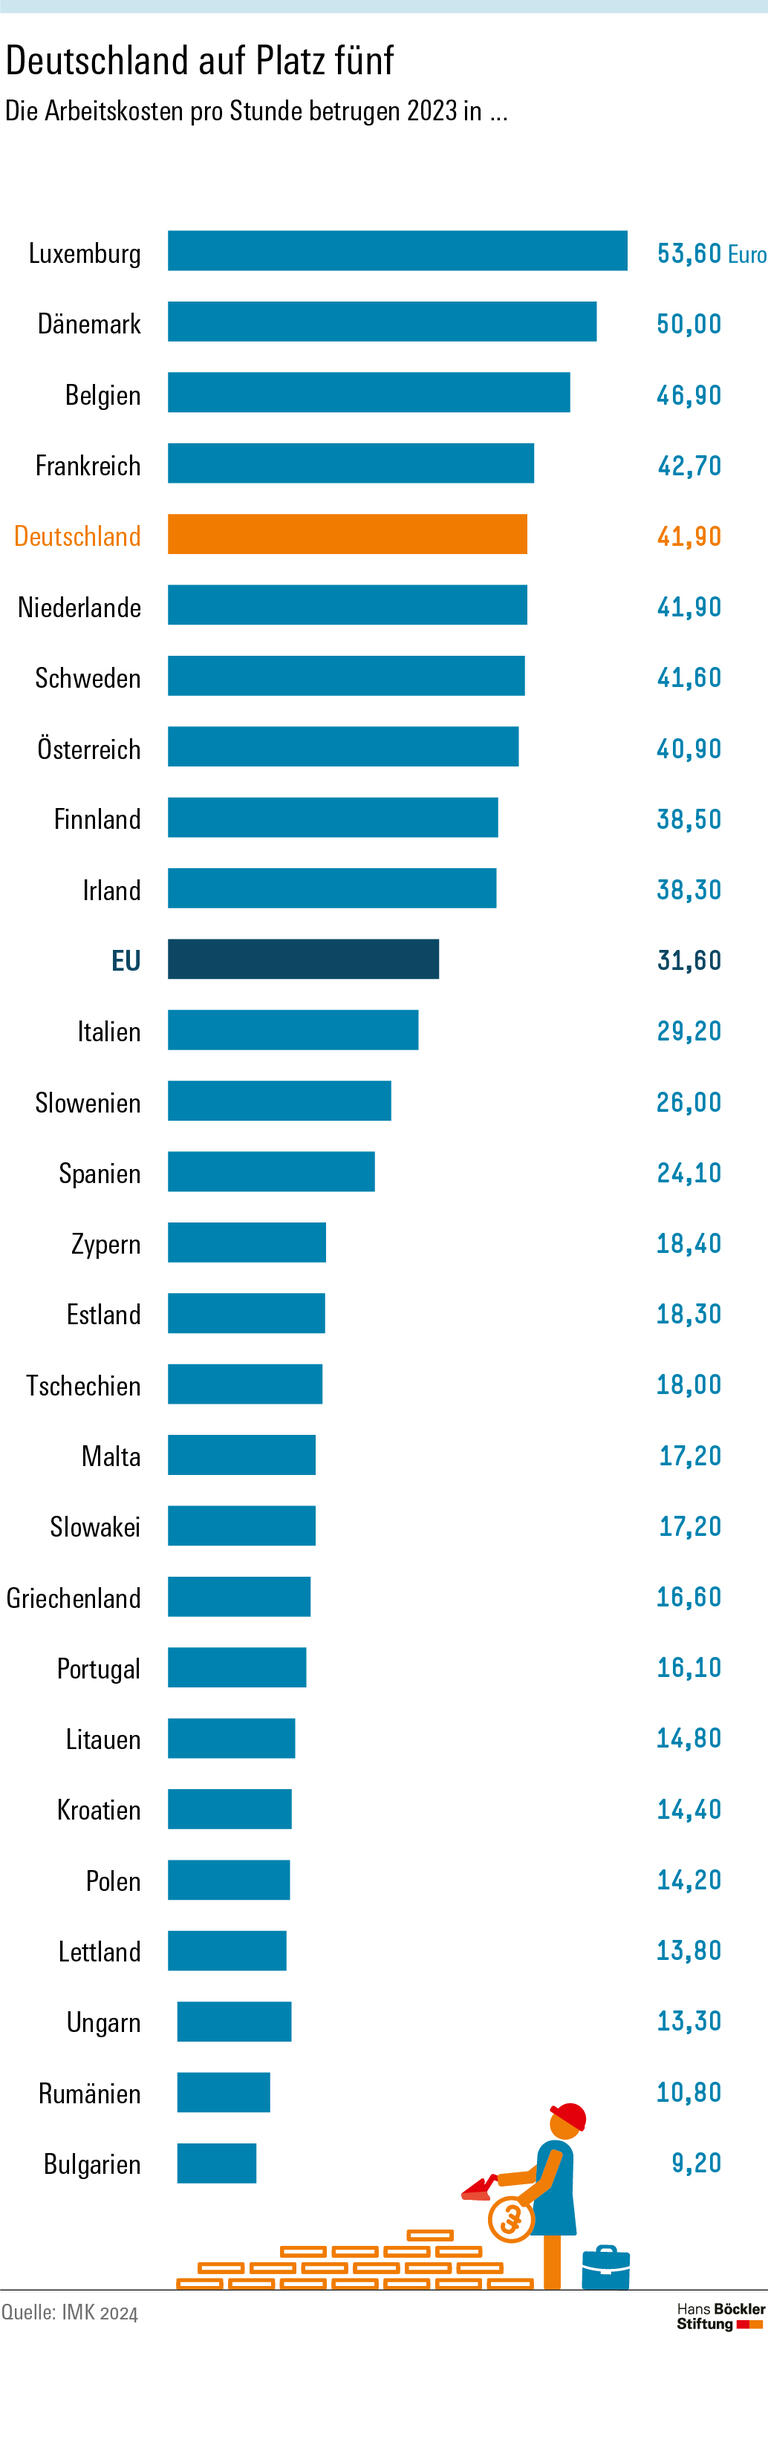 Mit Arbeitskosten von 41,90 Euro pro Stunde lag Deutschland 2023 im EU-Vergleich an fünfter Stelle hinter Luxemburg, Dänemark, Belgien und Frankreich, wo die Arbeitskosten zwischen 53,60 und 42,70 Euro lagen.